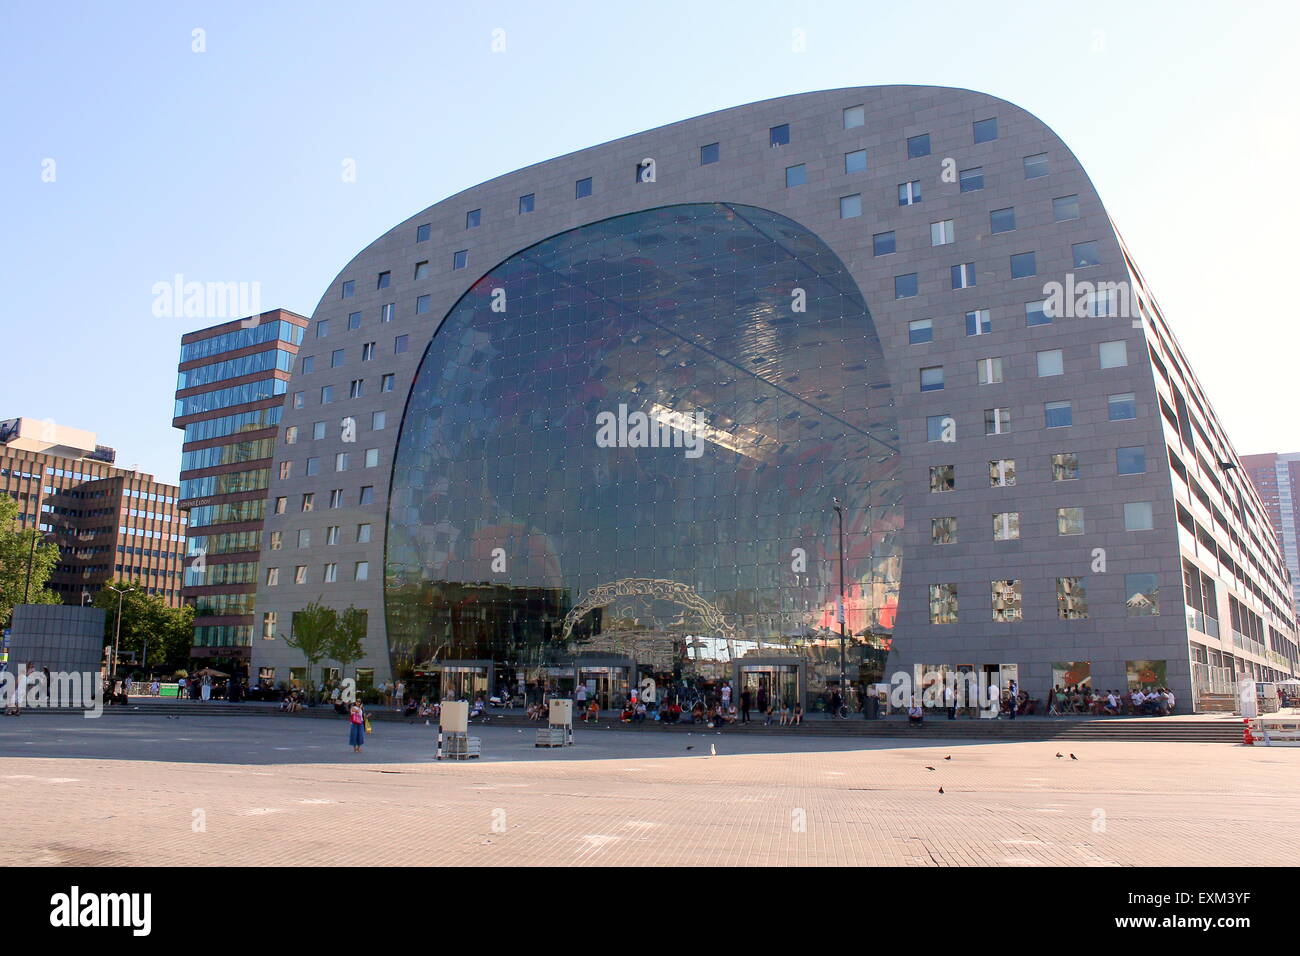 Esterno della Rotterdamse Markthal (Rotterdam Market Hall), a Blaak square. Progettato da architetti MVRDV, terminata nel 2014. Foto Stock